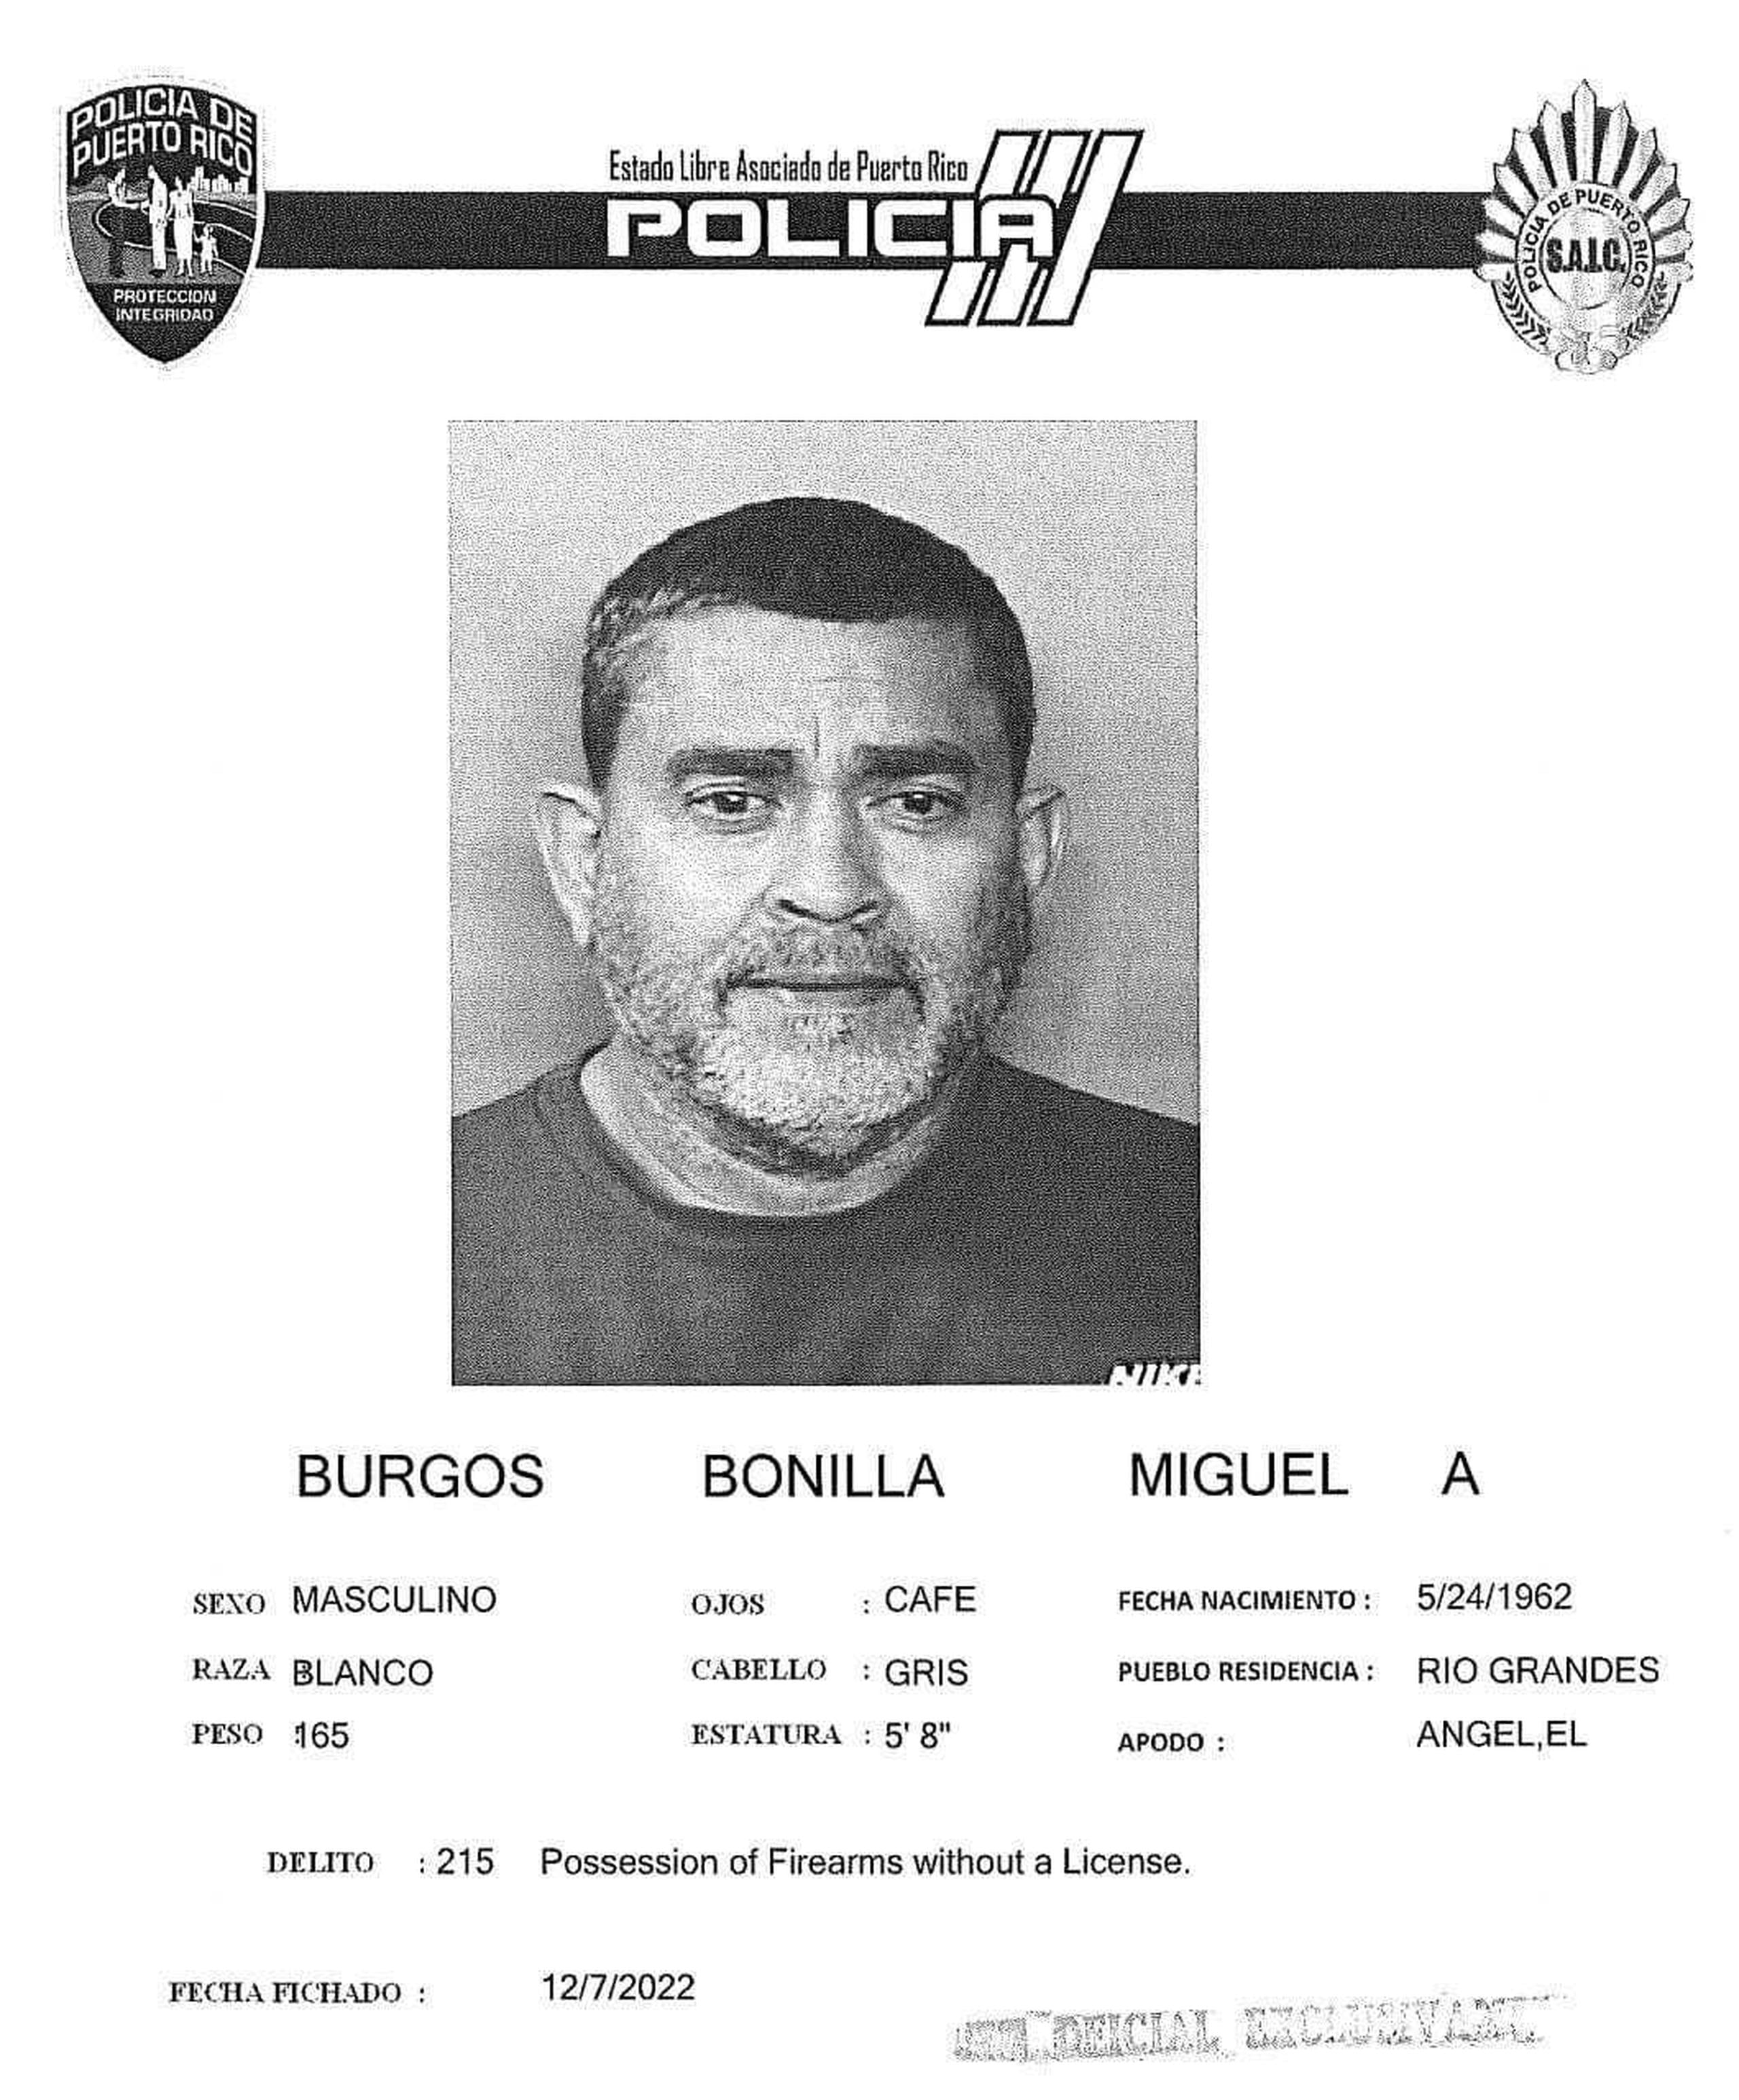 Ficha de Miguel A. Bonilla Burgos, quien enfrenta cargos por maltrato de menores por negligencia y violación a la Ley de Armas, luego que su hijo llevara su arma de fuego ilegal a la escuela.